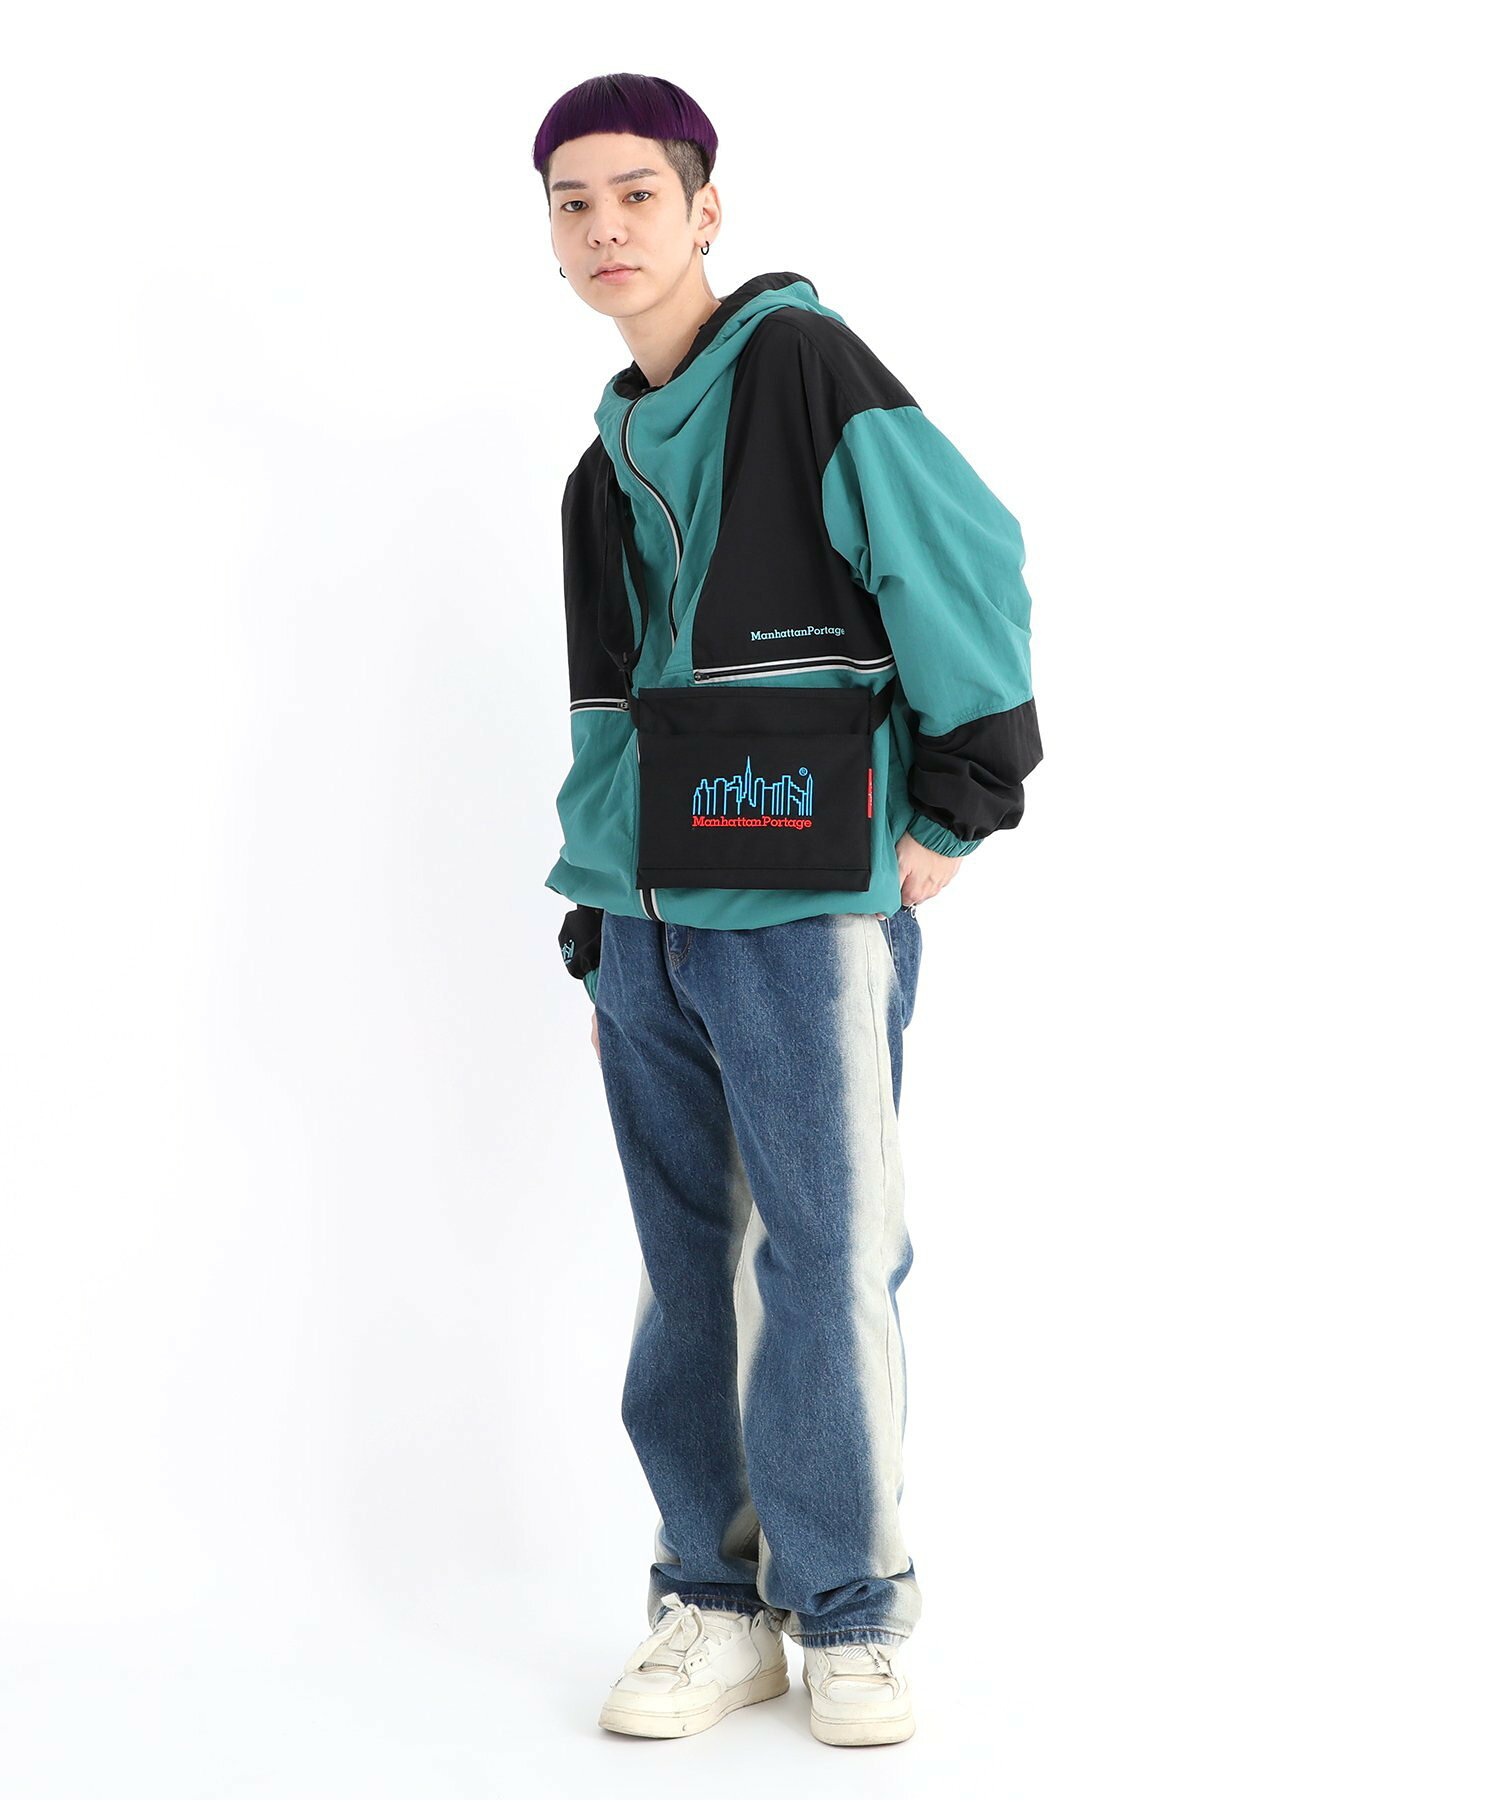 6030-3EMBNEON Ithaca Shoulder Bag 3D Embroidery Neon